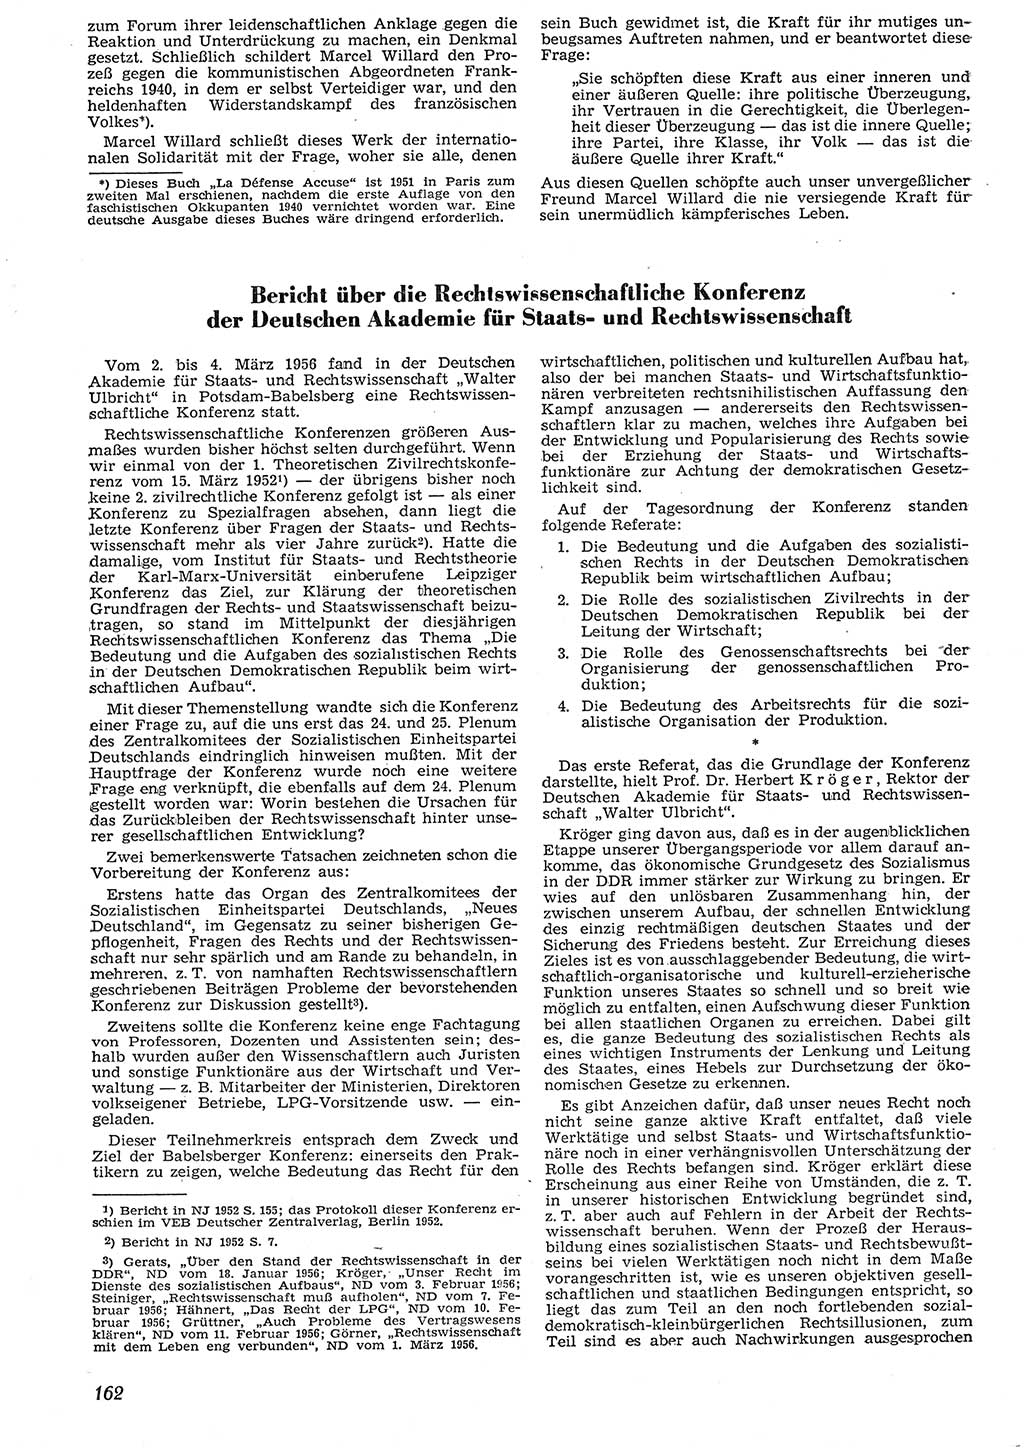 Neue Justiz (NJ), Zeitschrift für Recht und Rechtswissenschaft [Deutsche Demokratische Republik (DDR)], 10. Jahrgang 1956, Seite 162 (NJ DDR 1956, S. 162)